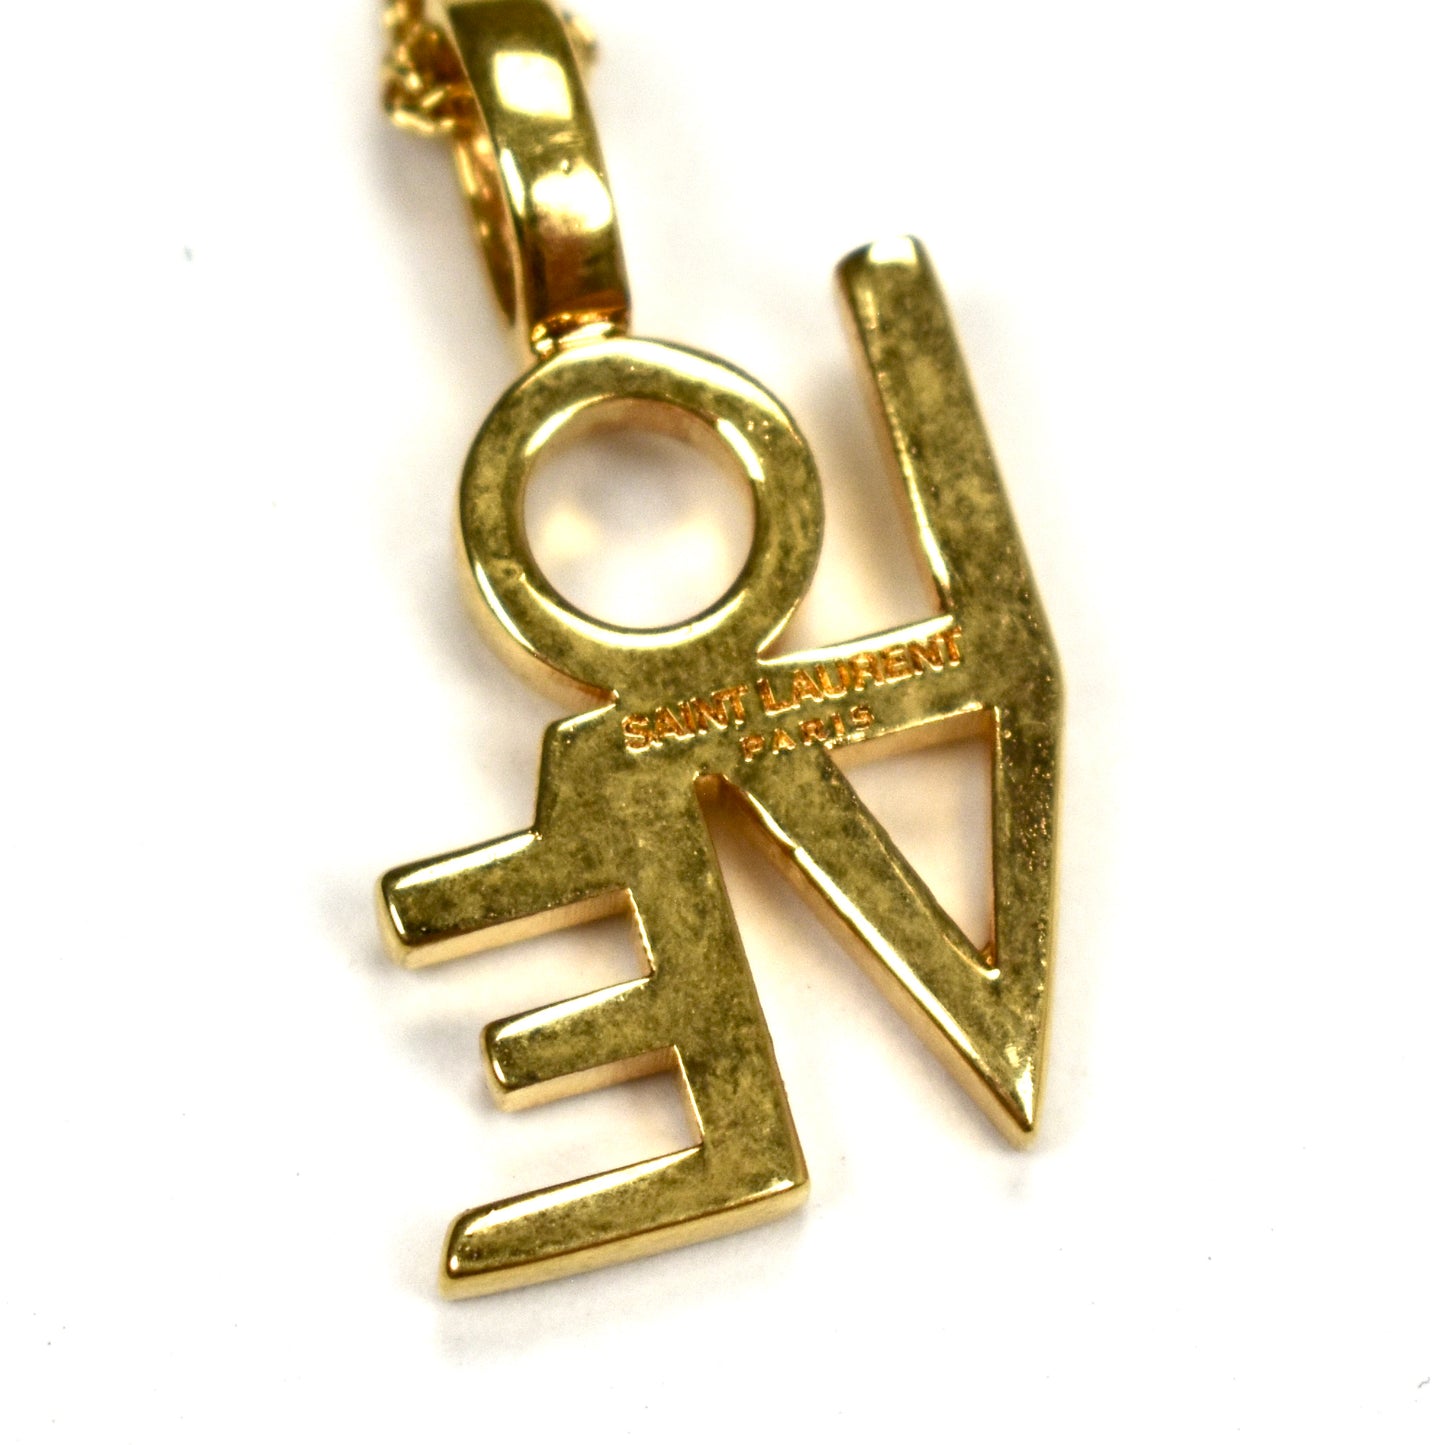 Saint Laurent - Gold Love Pendant Necklace